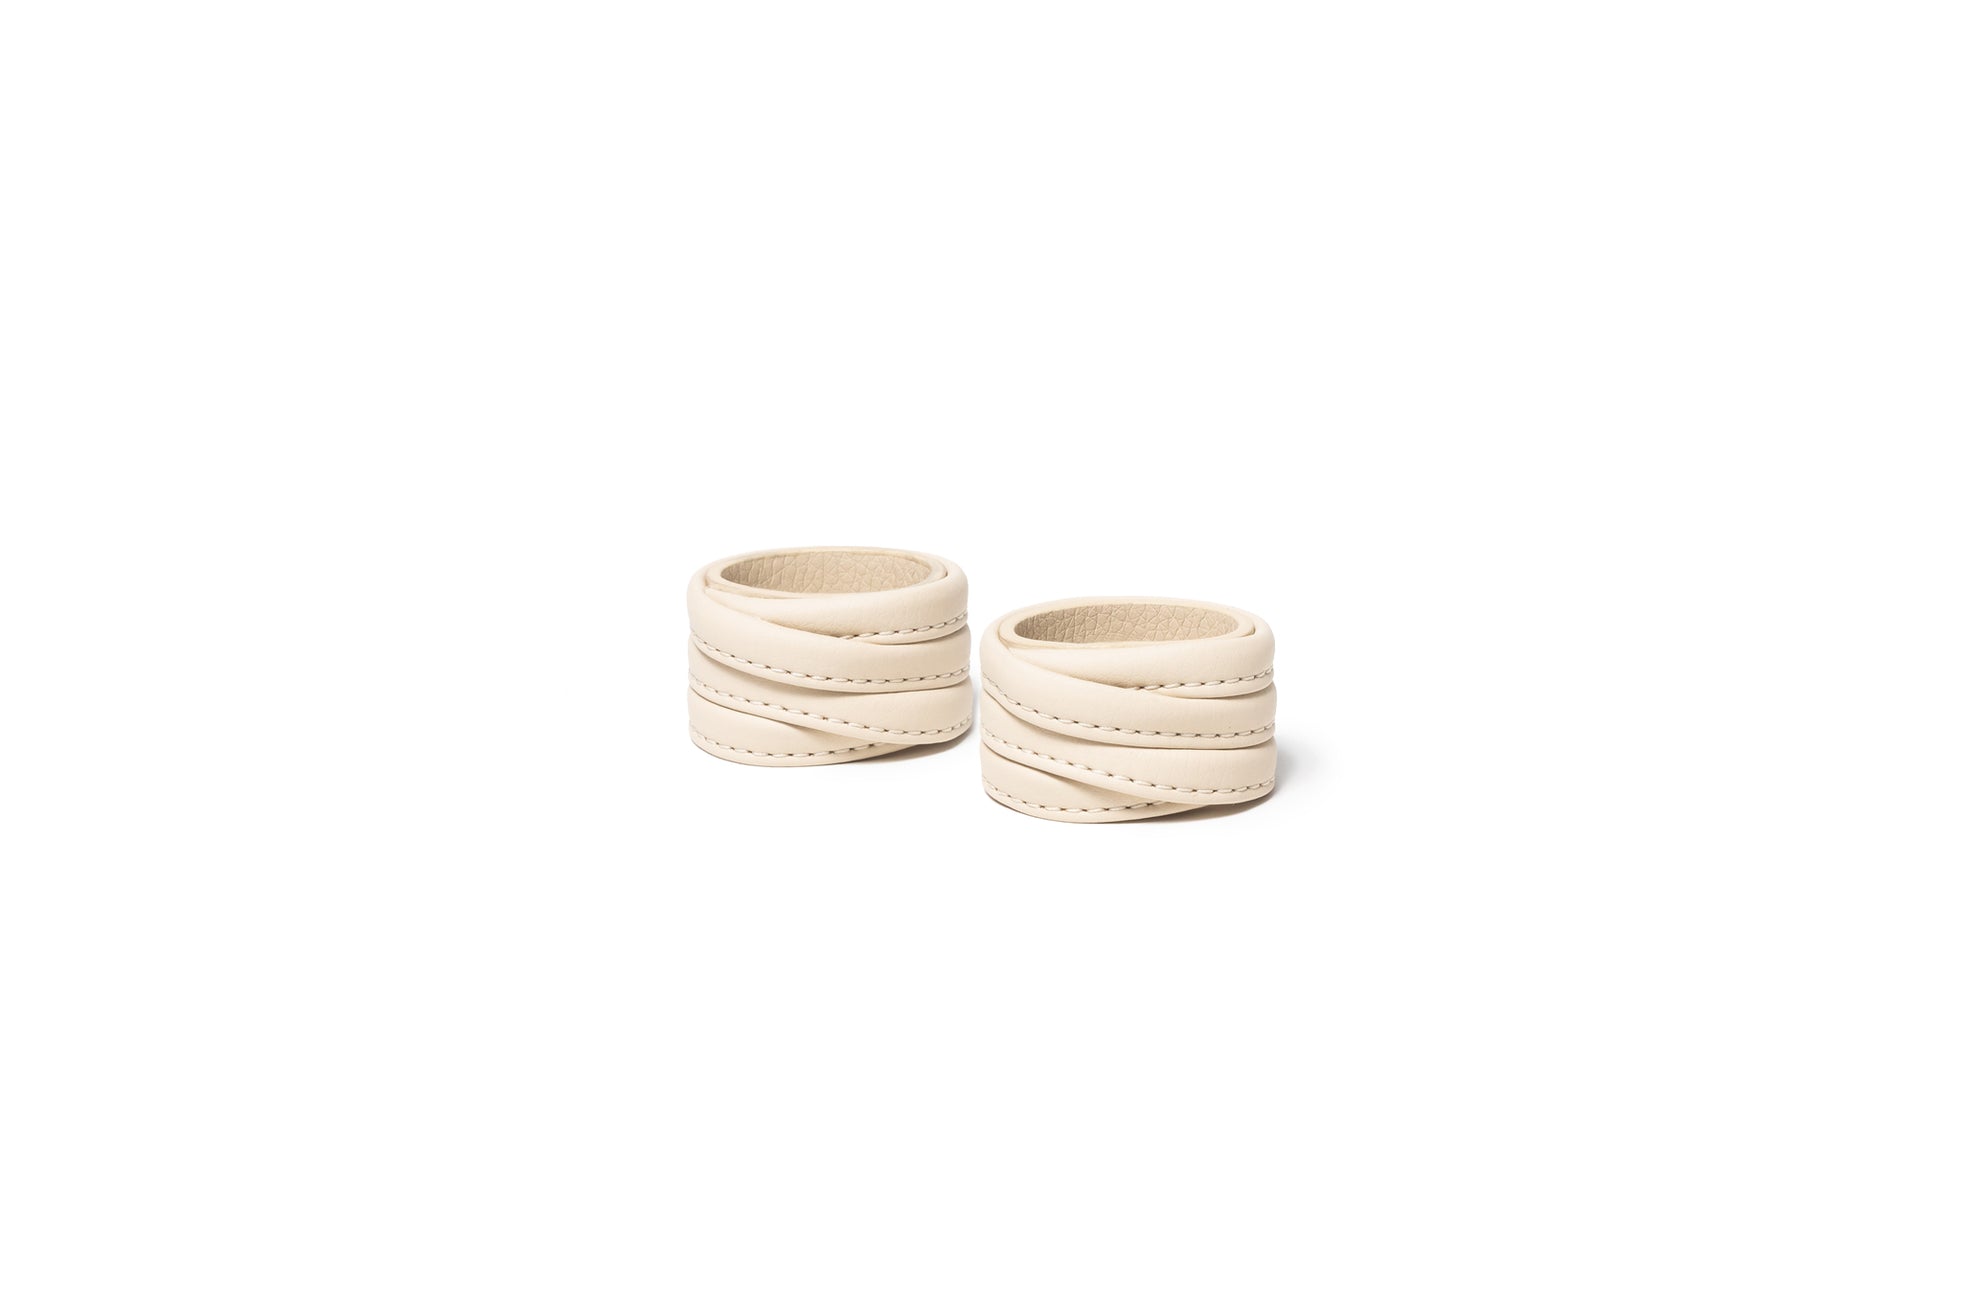 The Napkin Rings - Sample Sale in Technik-Leather in Oat image 1